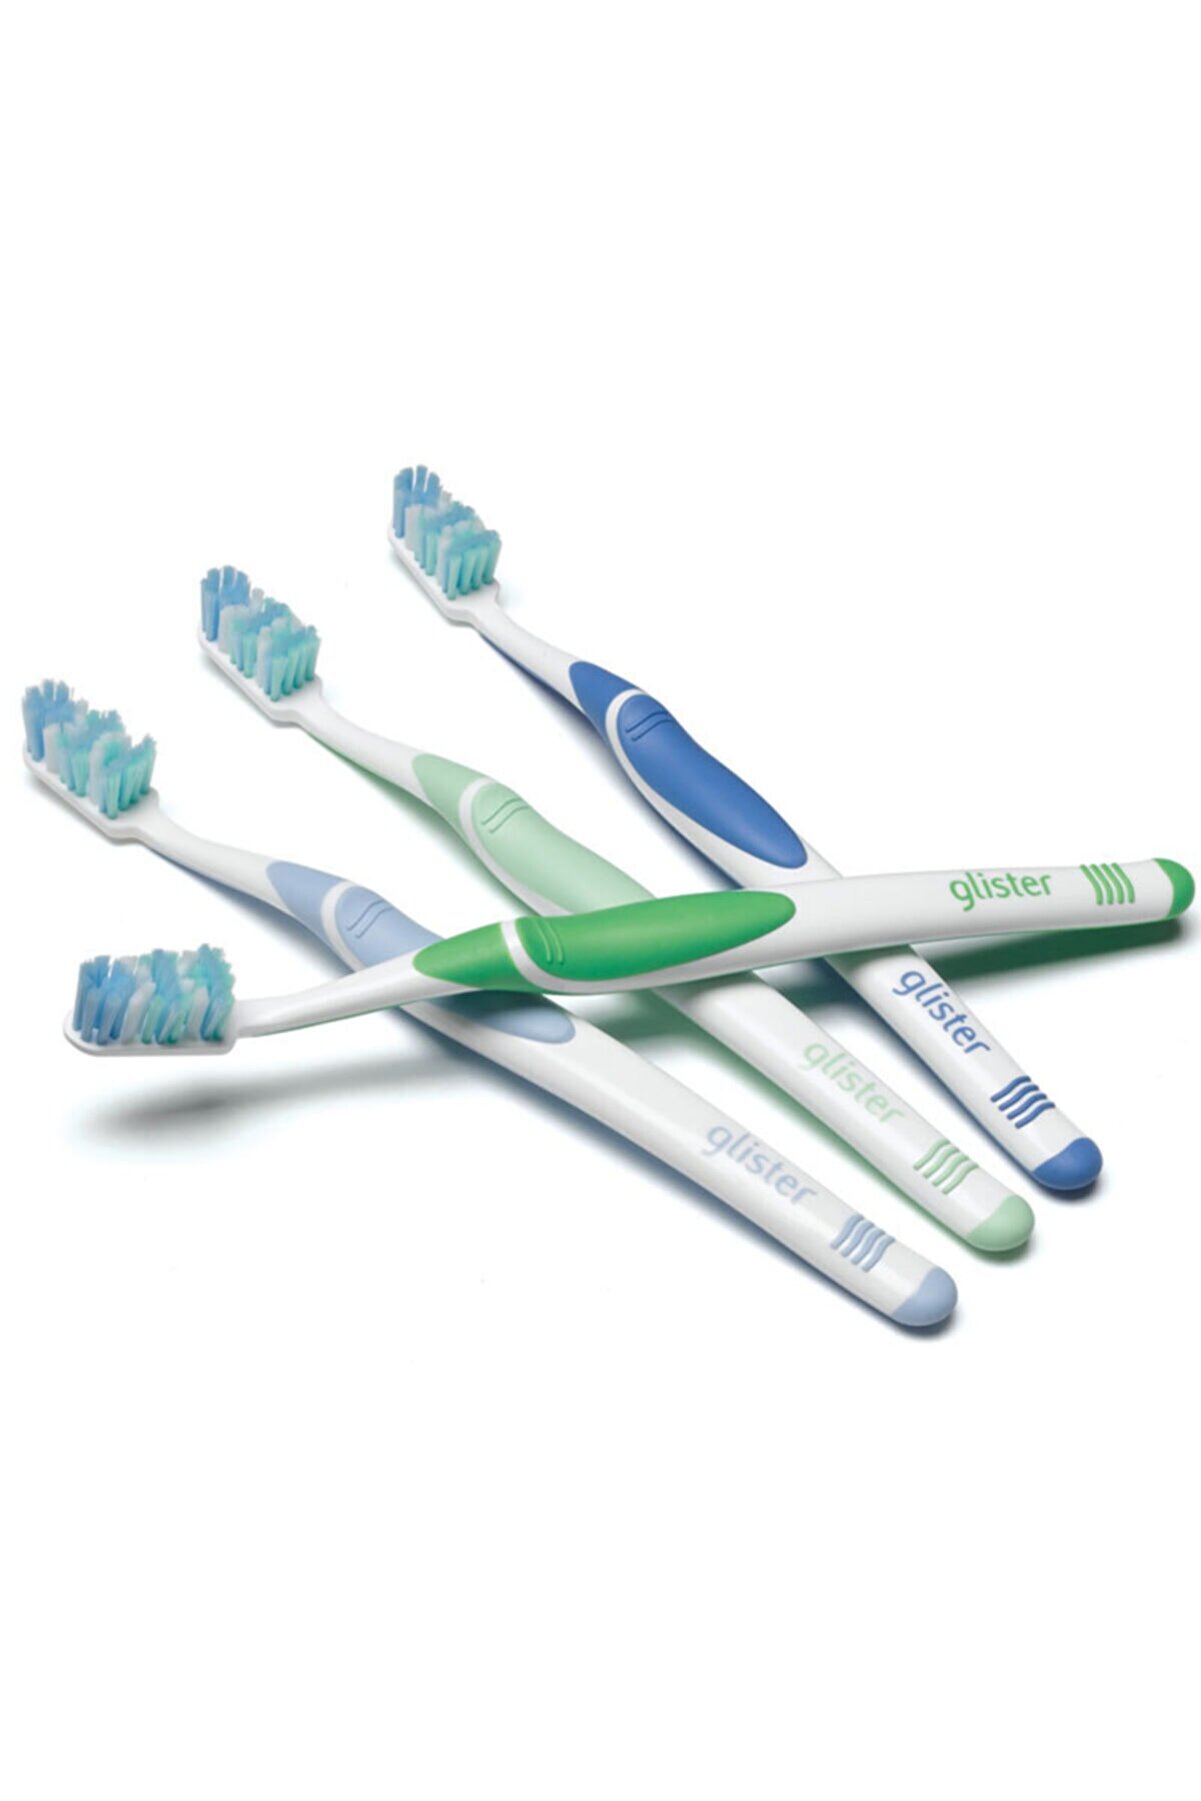 Amway Glister Kutulu Diş Fırçası 4 Adet Görseldeki Ürün Gönderiliyor